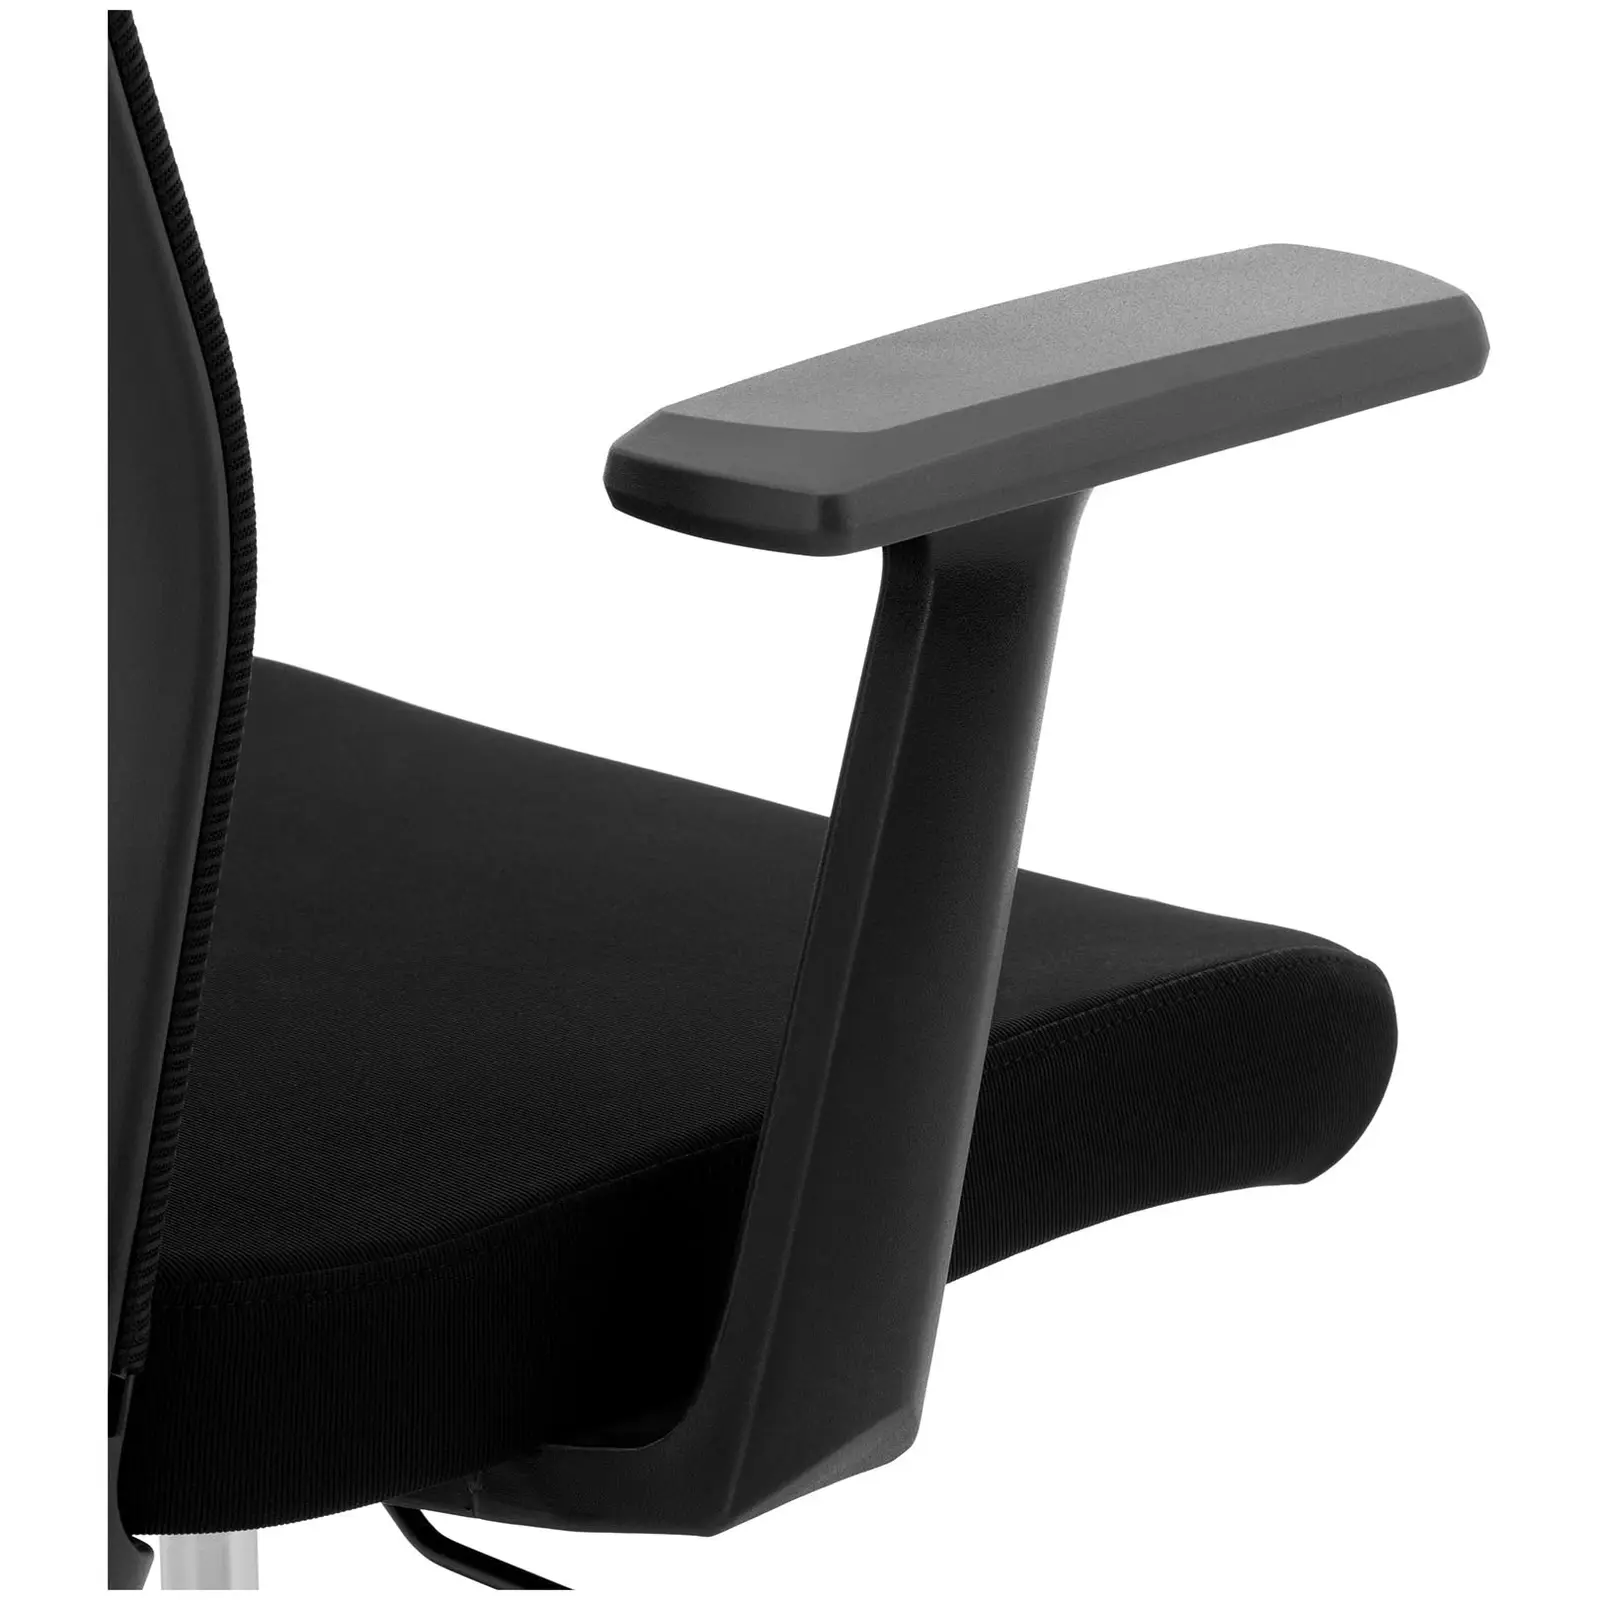 Fotel biurowy - oparcie z siatki - zagłówek - siedzisko 50 x 50.5 cm - do 150 kg - czarny